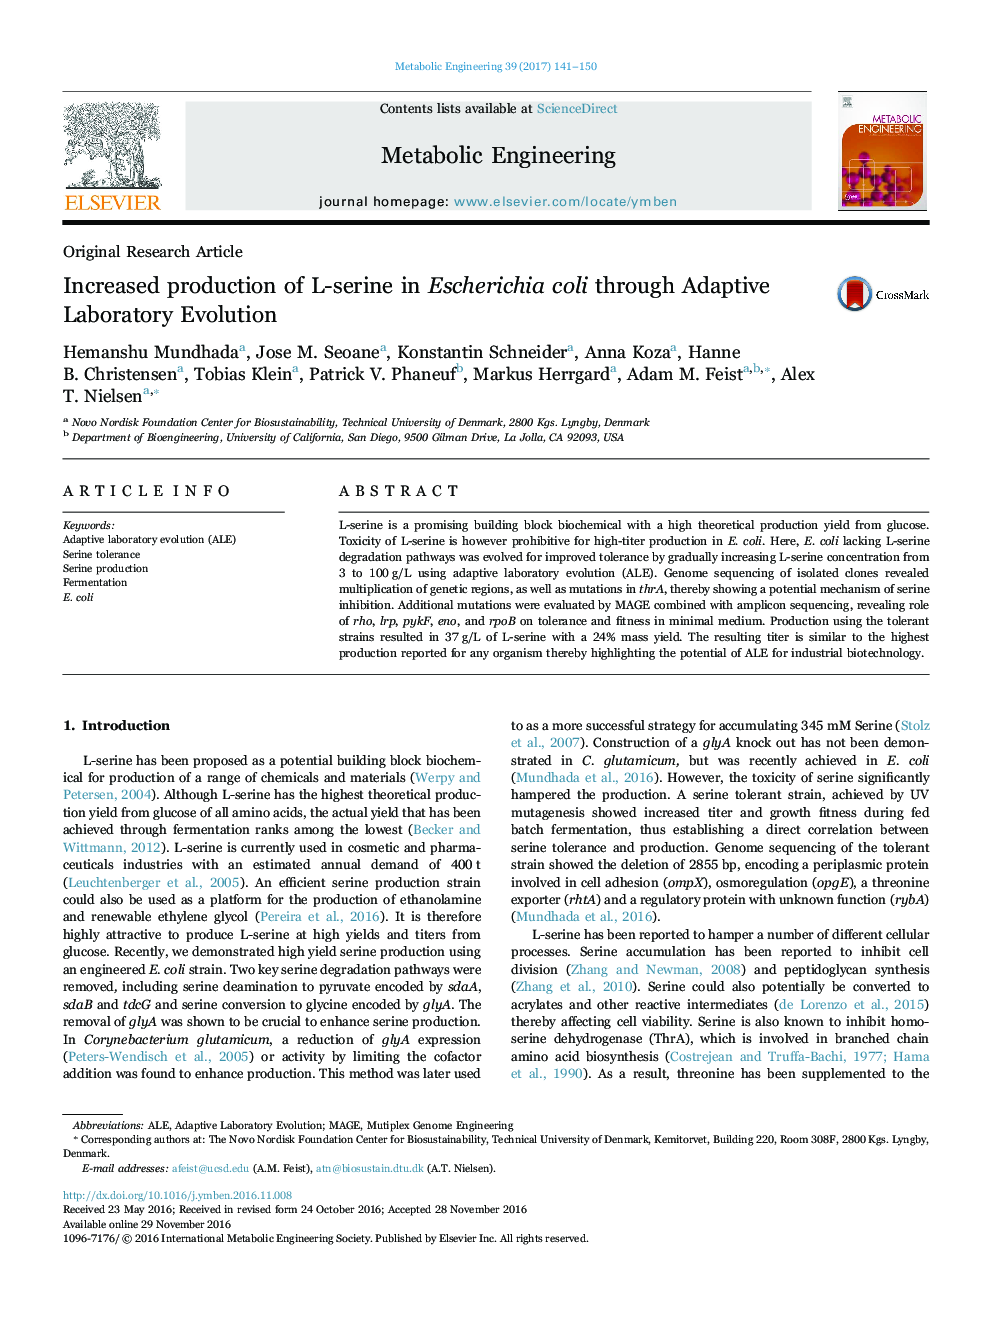 Original Research ArticleIncreased production of L-serine in Escherichia coli through Adaptive Laboratory Evolution